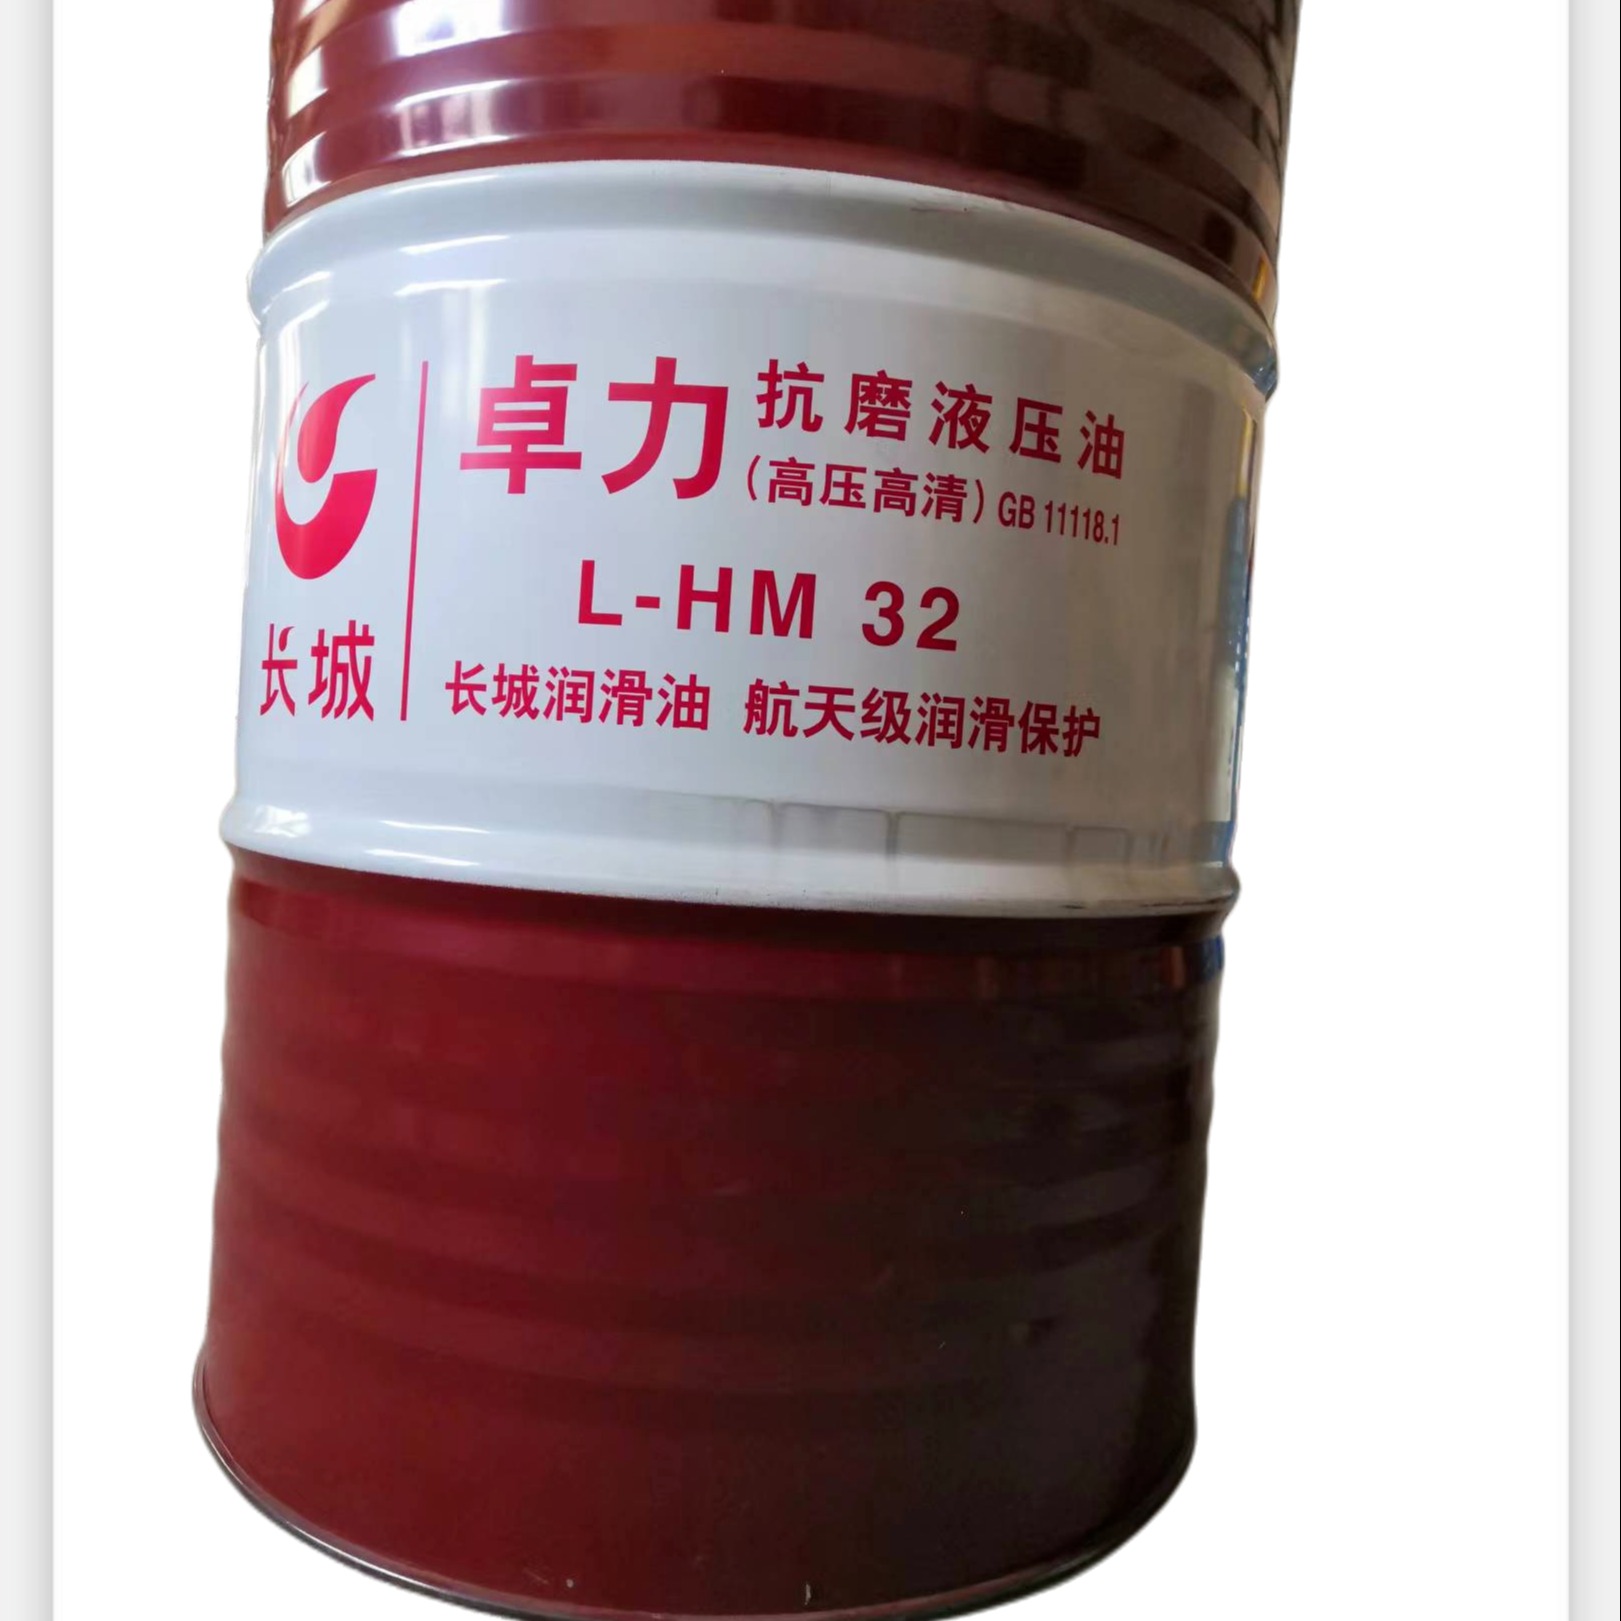 北京产中石化长城润滑油卓力HM32抗磨液压油